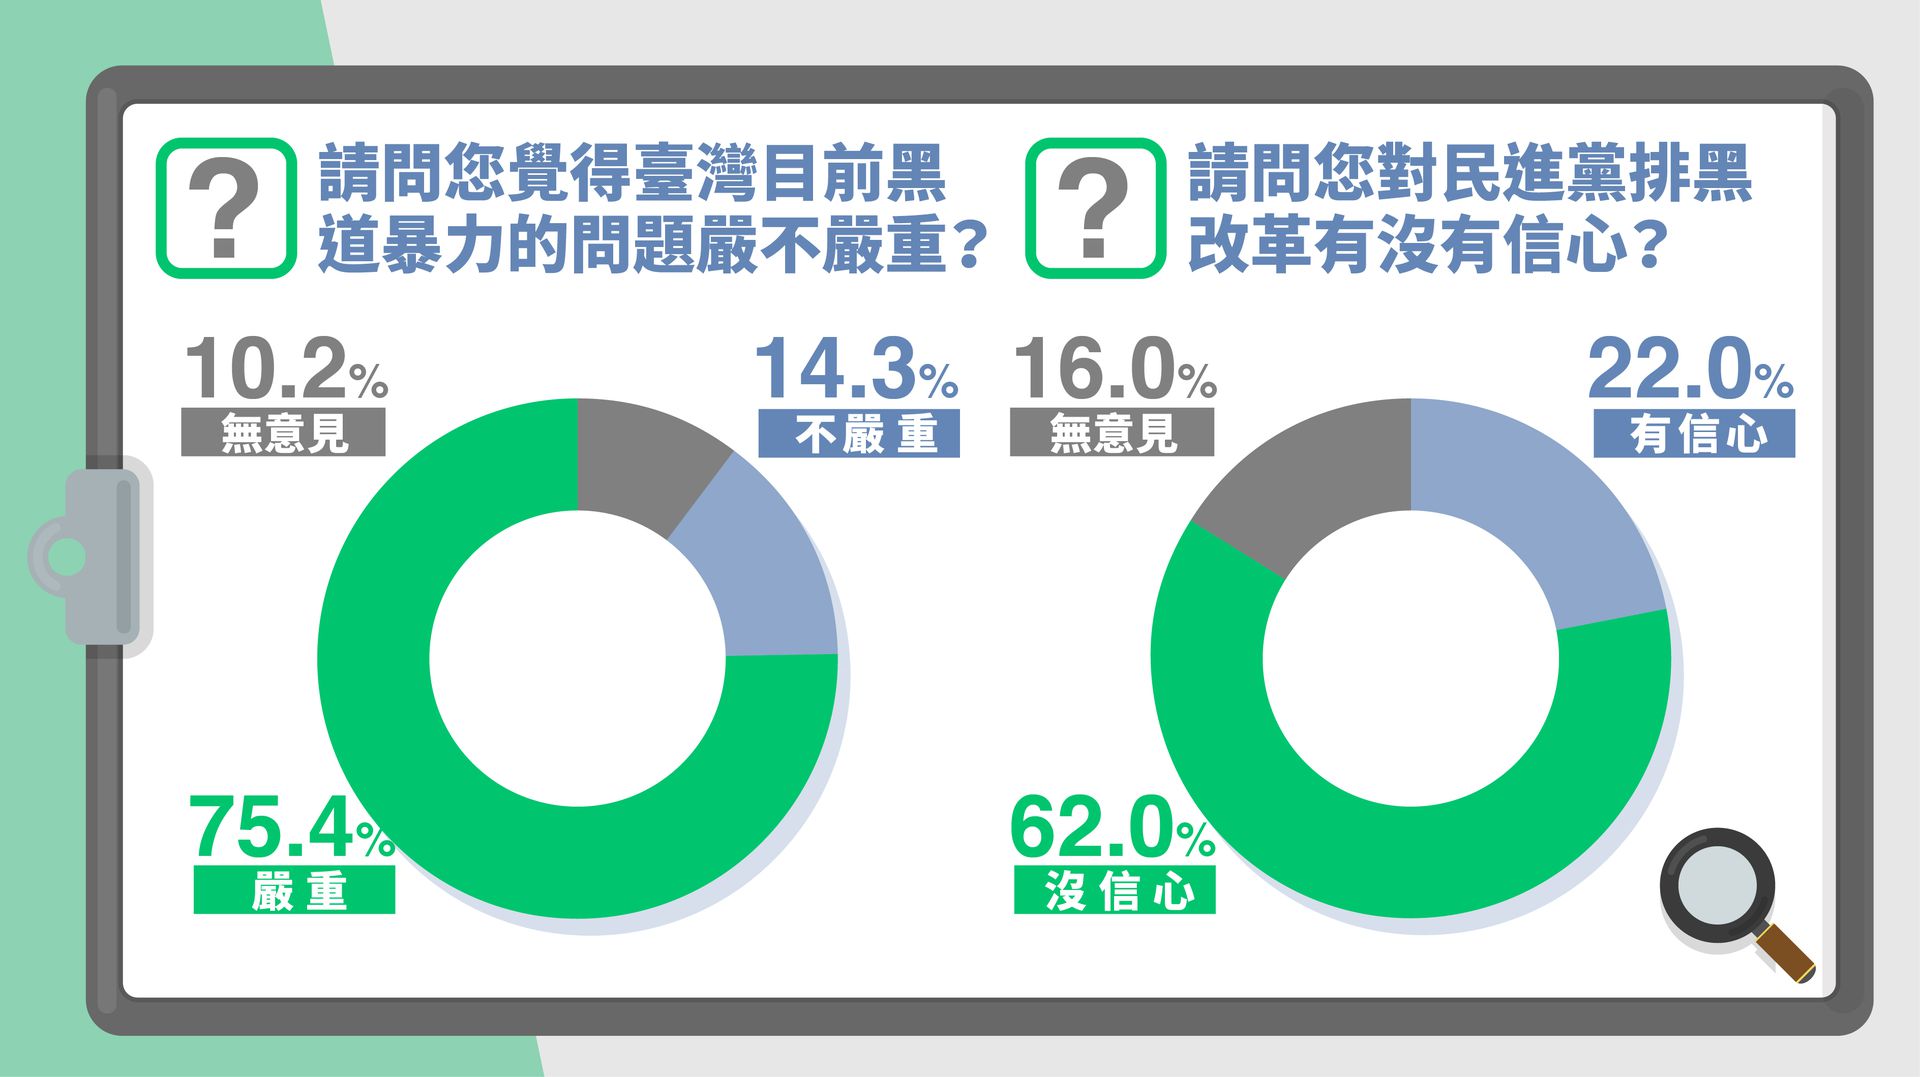 国民党5月27日召开“蔡英文施政总体检，失信于民，几乎死当”记者会，针对与社会治安密切相关的黑道暴力问题，75.4%受访民众表达台湾黑道暴力问题严峻，受访的民进党支持者亦有69.5%认同。民众对于民进党排黑改革也没有信心（62.0%），民进党支持者中26.9%表示没信心，无政党倾向者更是61.6%表示没信心。 （国民党）